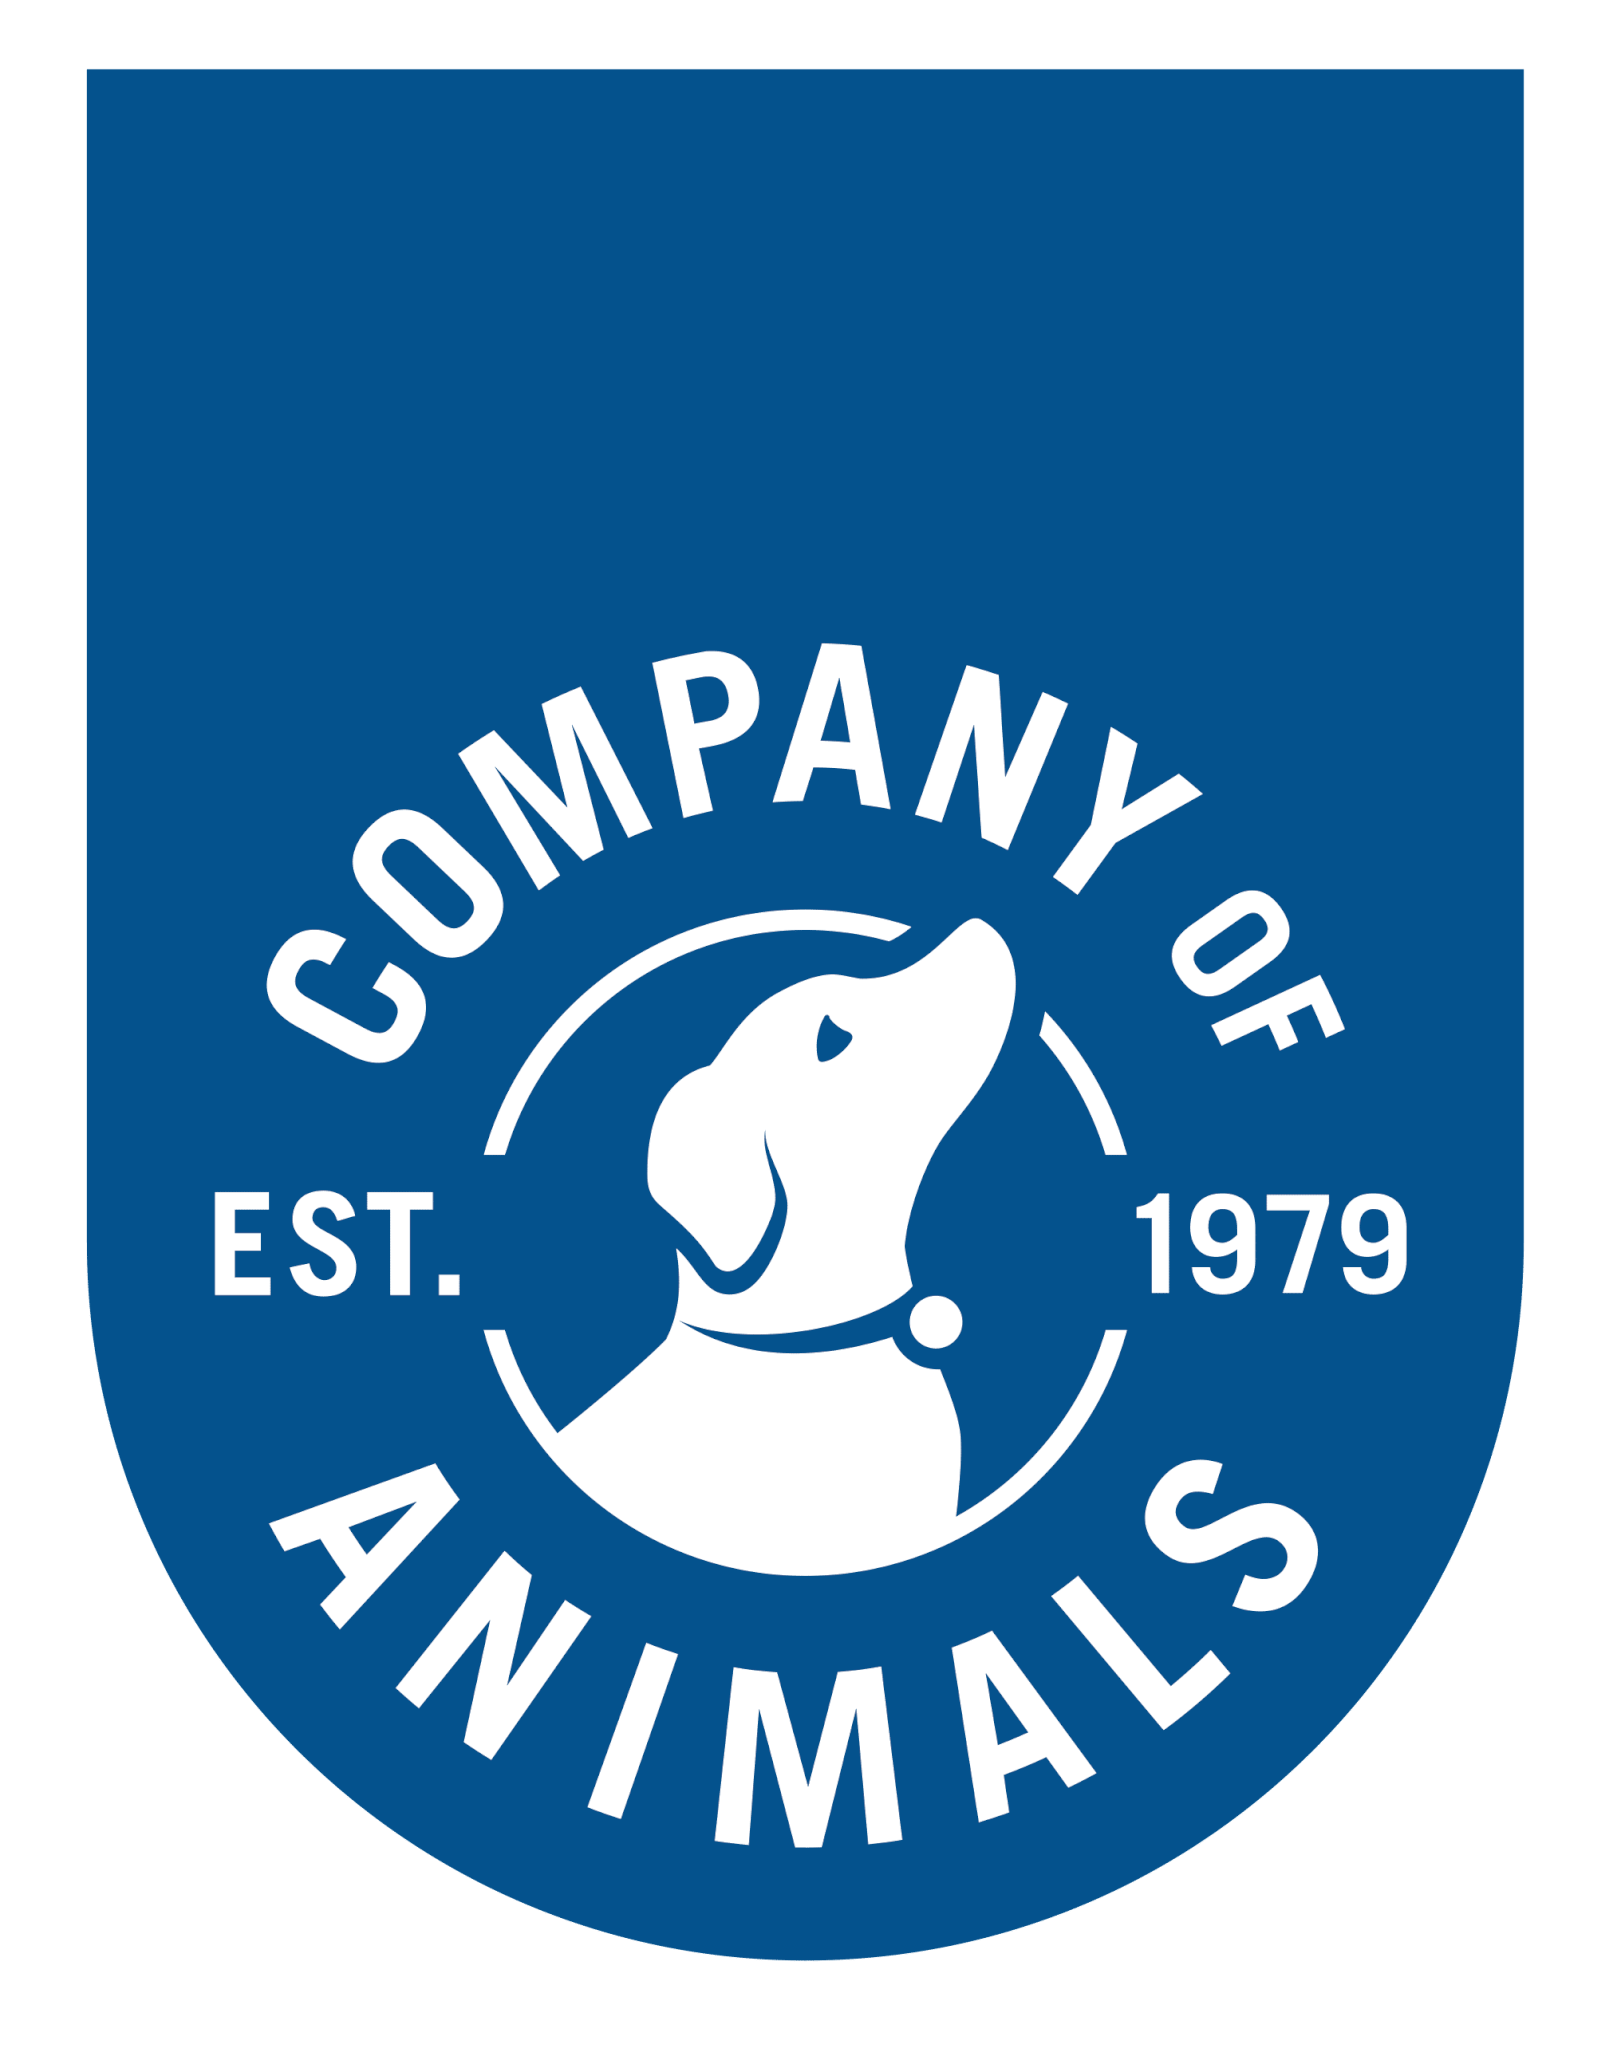 company of animals logo